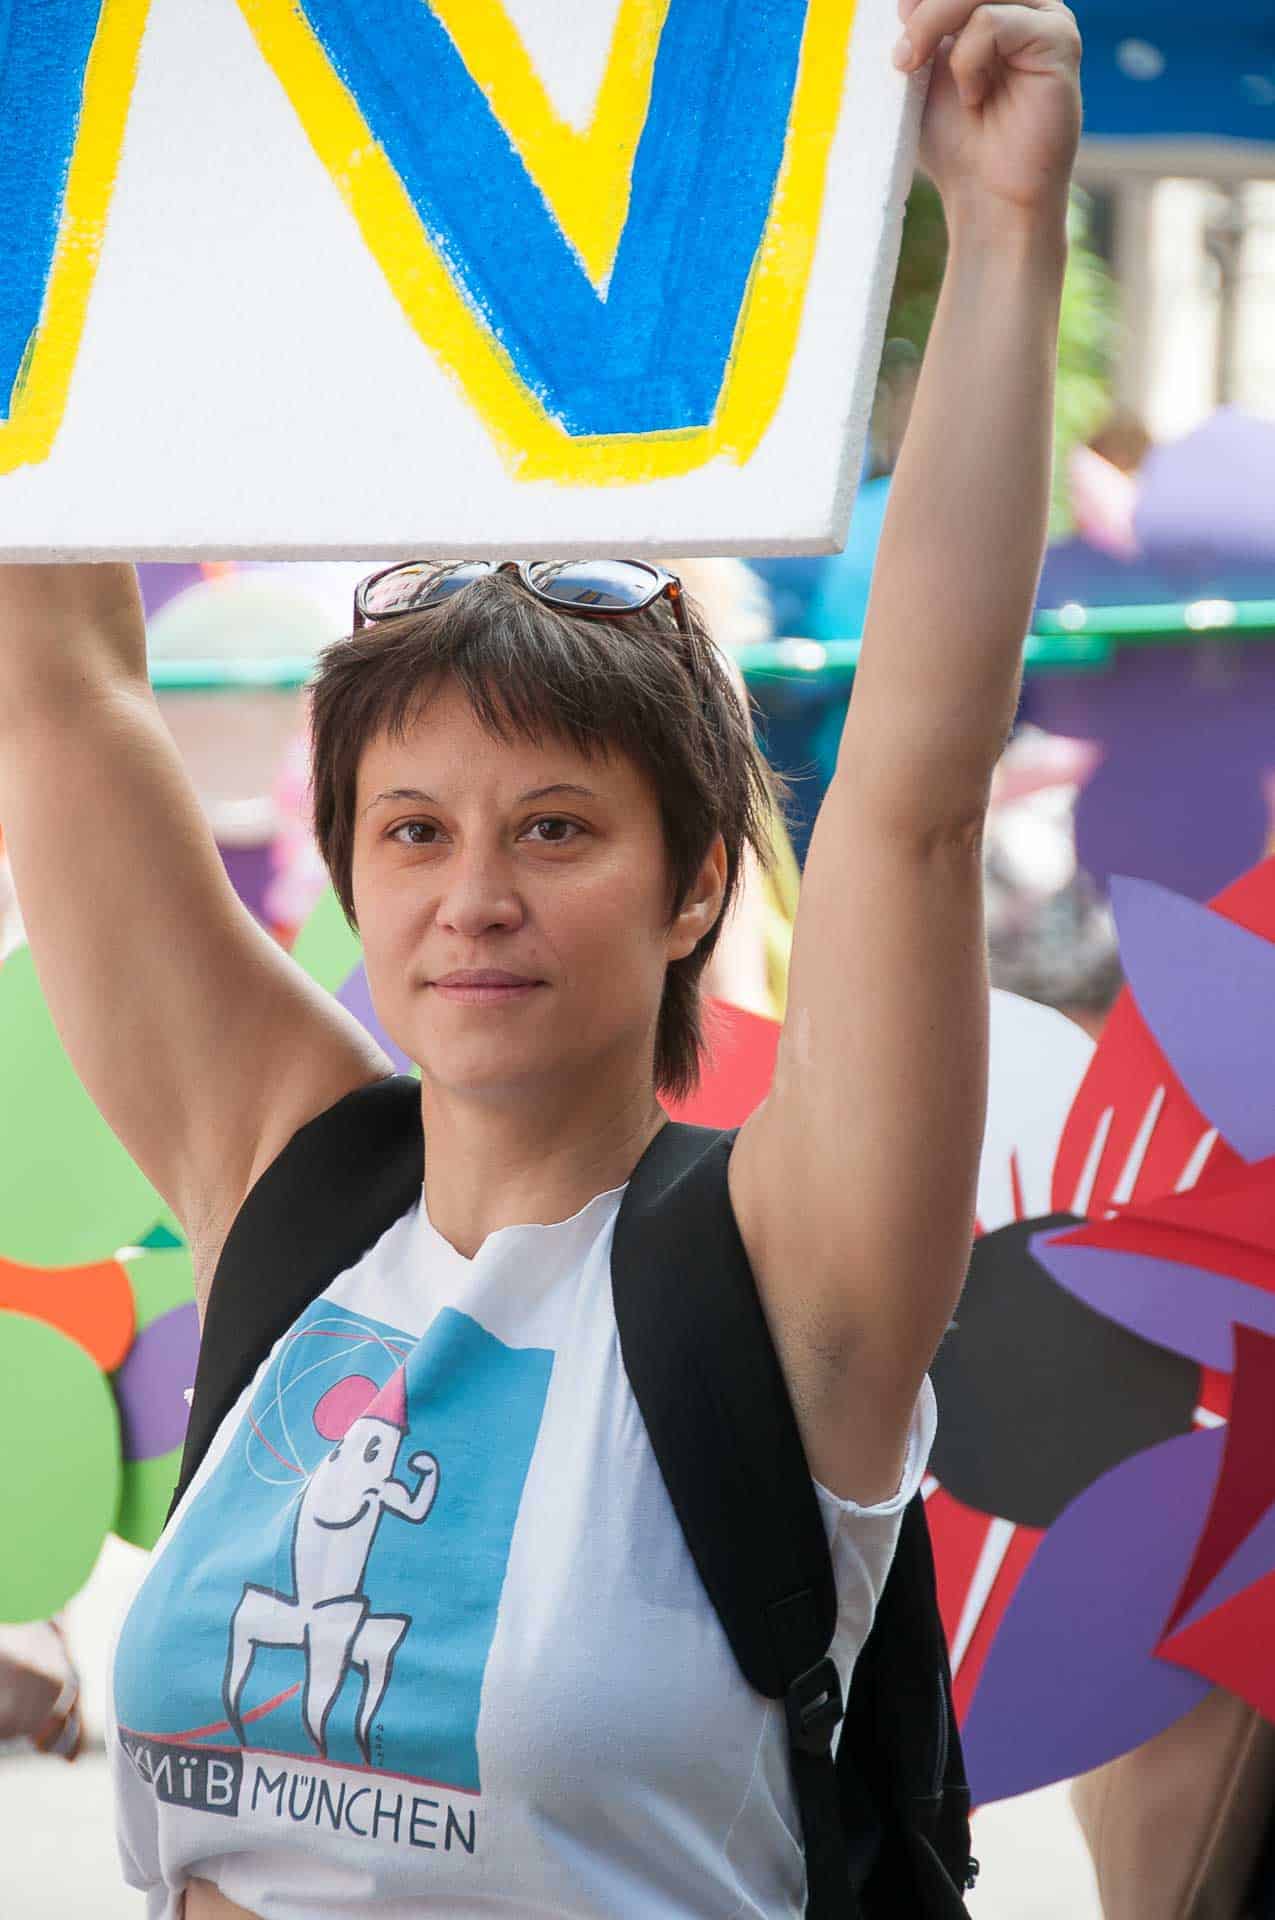 Olena representing Ukraine at Munich Pride